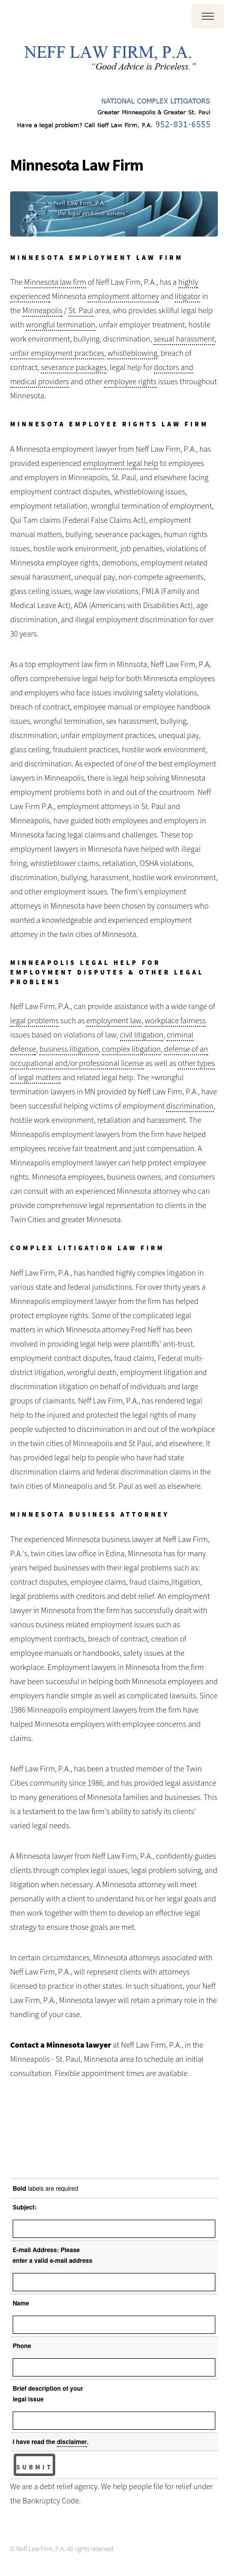 Neff Law Firm, P.A. - Edina MN Lawyers